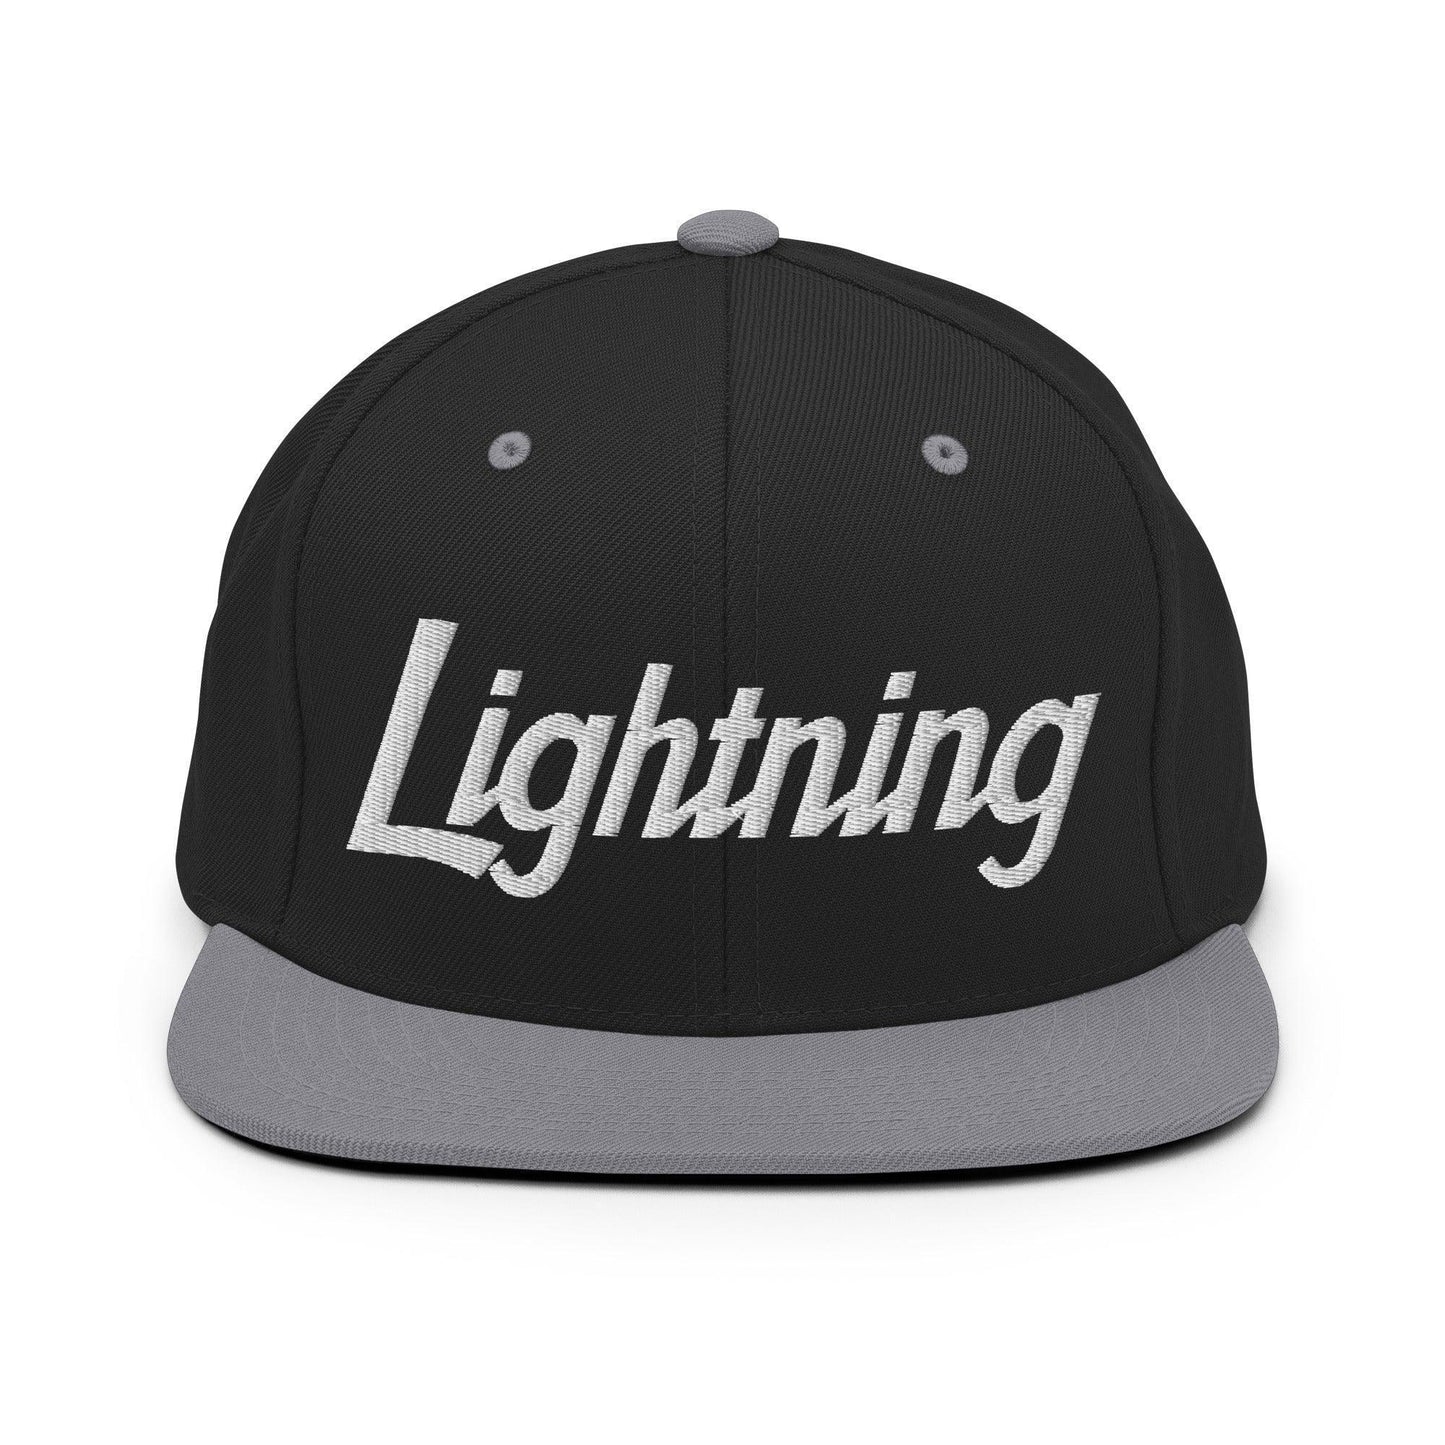 Lightning School Mascot Script Snapback Hat Black/ Silver